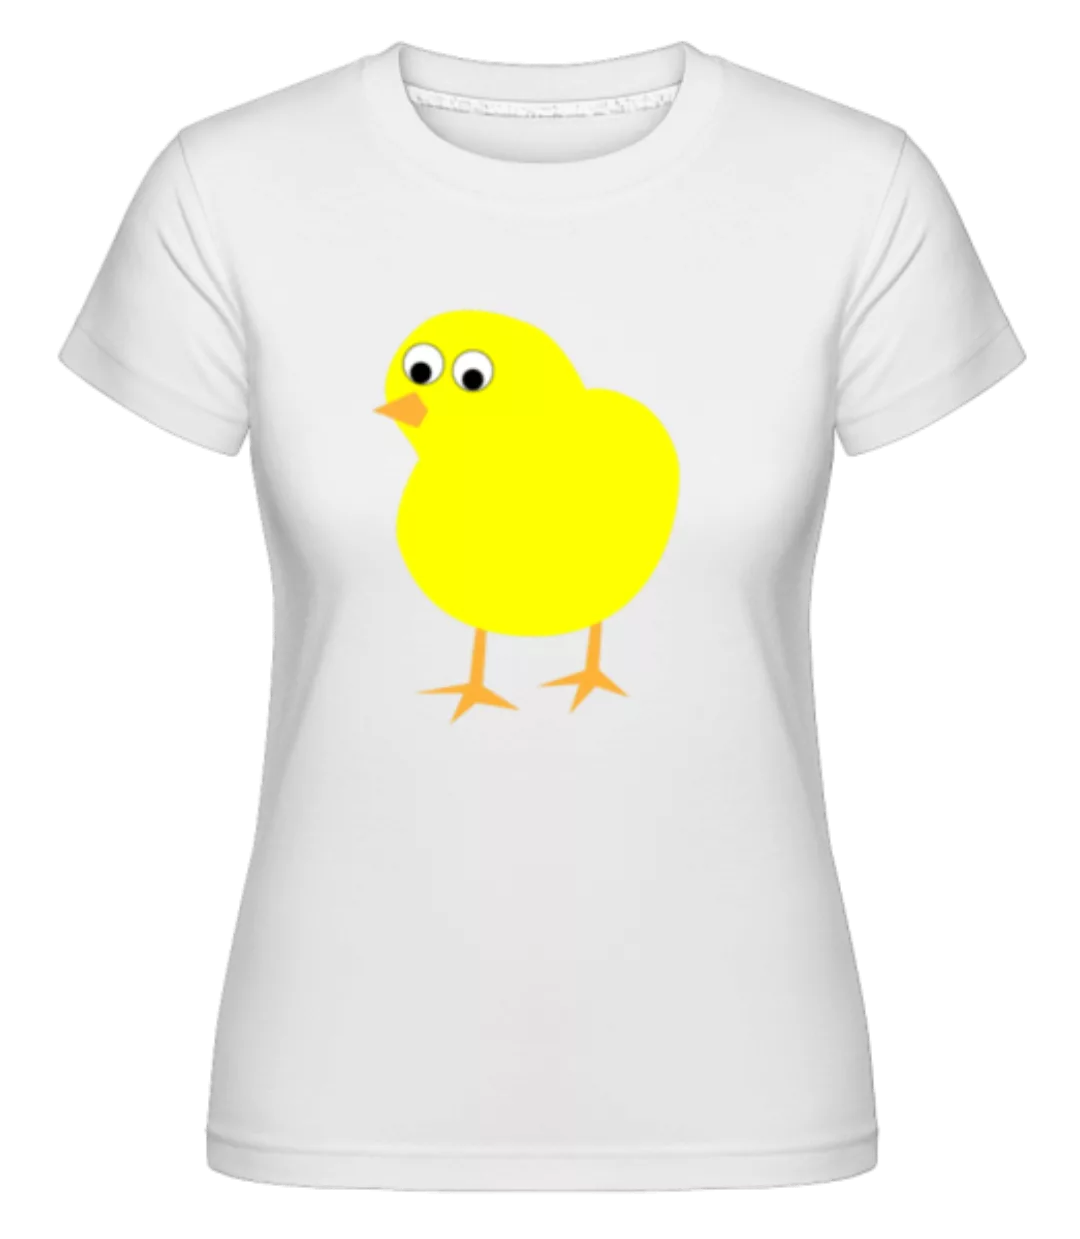 Küken · Shirtinator Frauen T-Shirt günstig online kaufen